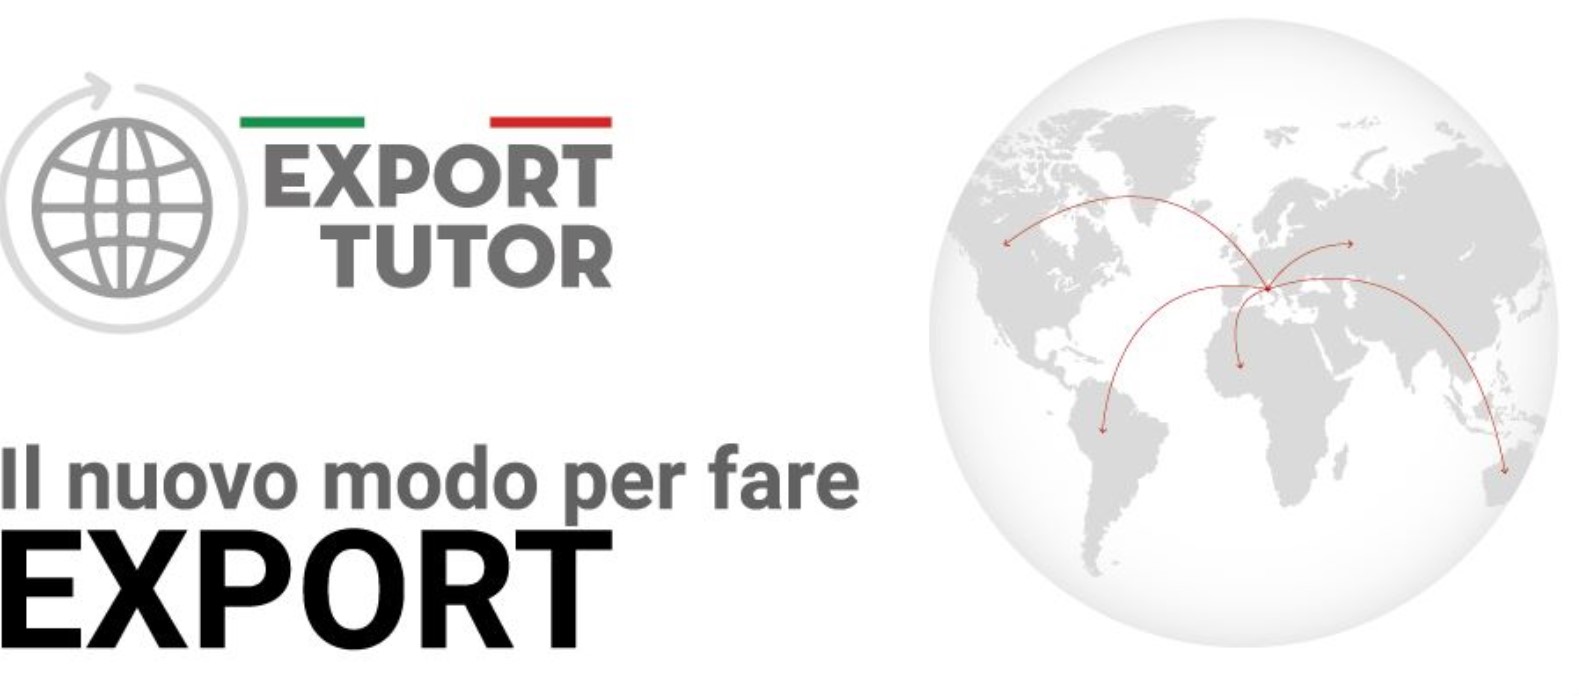 Export Tutor - Parte il nuovo Progetto di assistenza dell’Agenzia ICE a sostegno delle imprese italiane